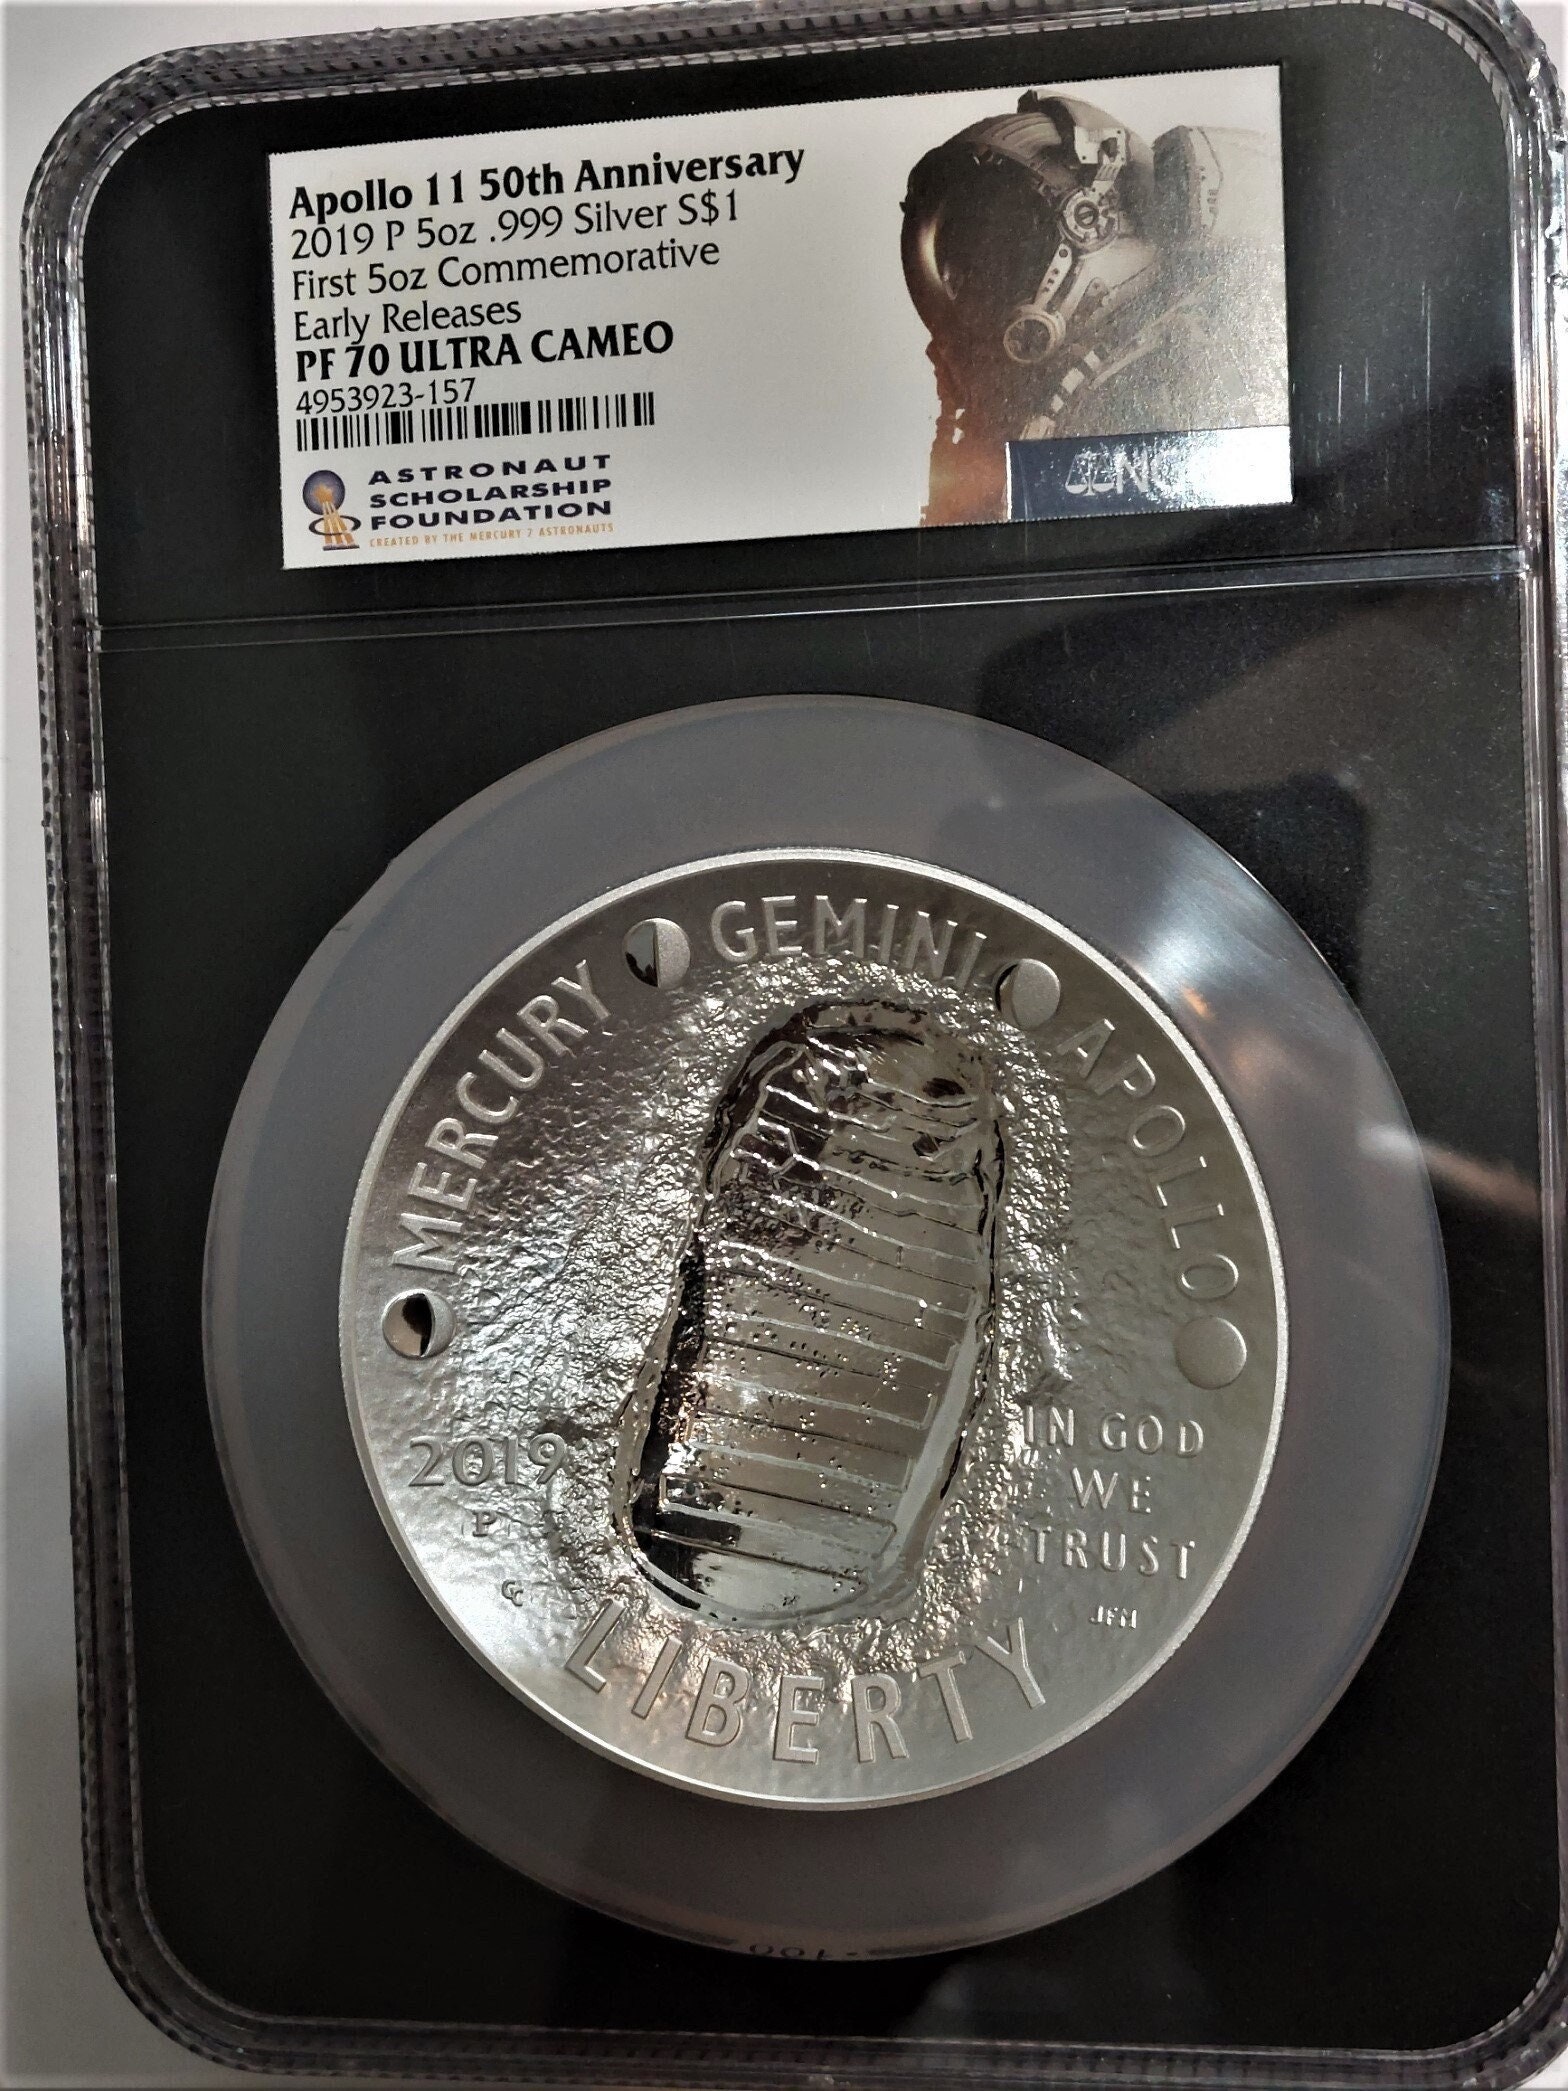 Apollo 11 Coin - Etsy